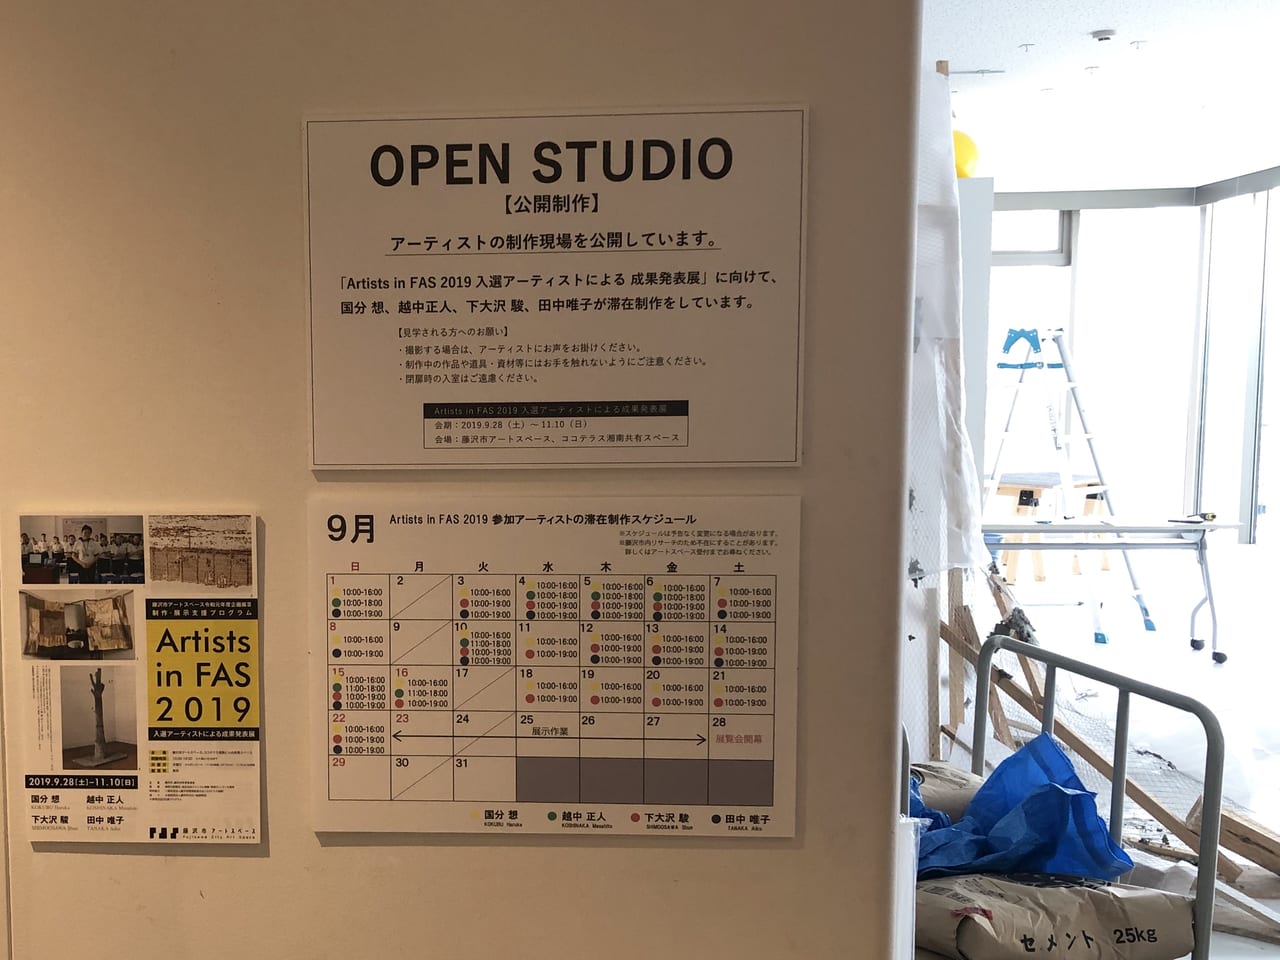 藤沢市アートスペースのオープンスタジオ